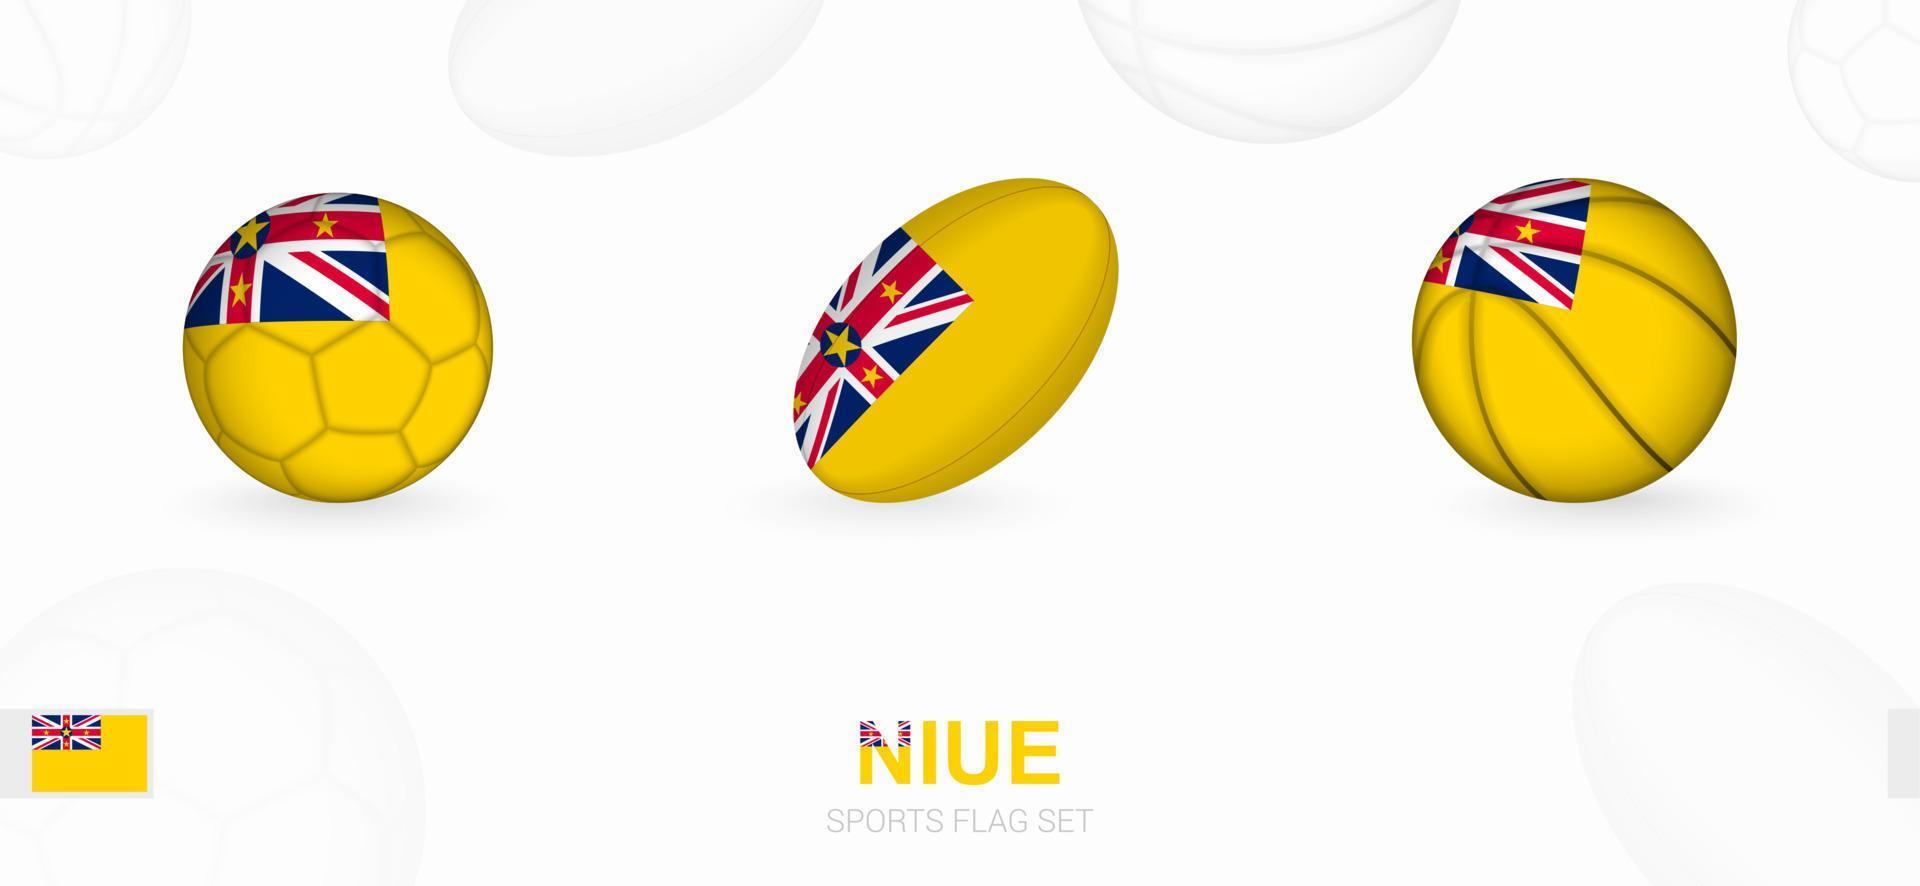 Deportes íconos para fútbol, rugby y baloncesto con el bandera de niue. vector